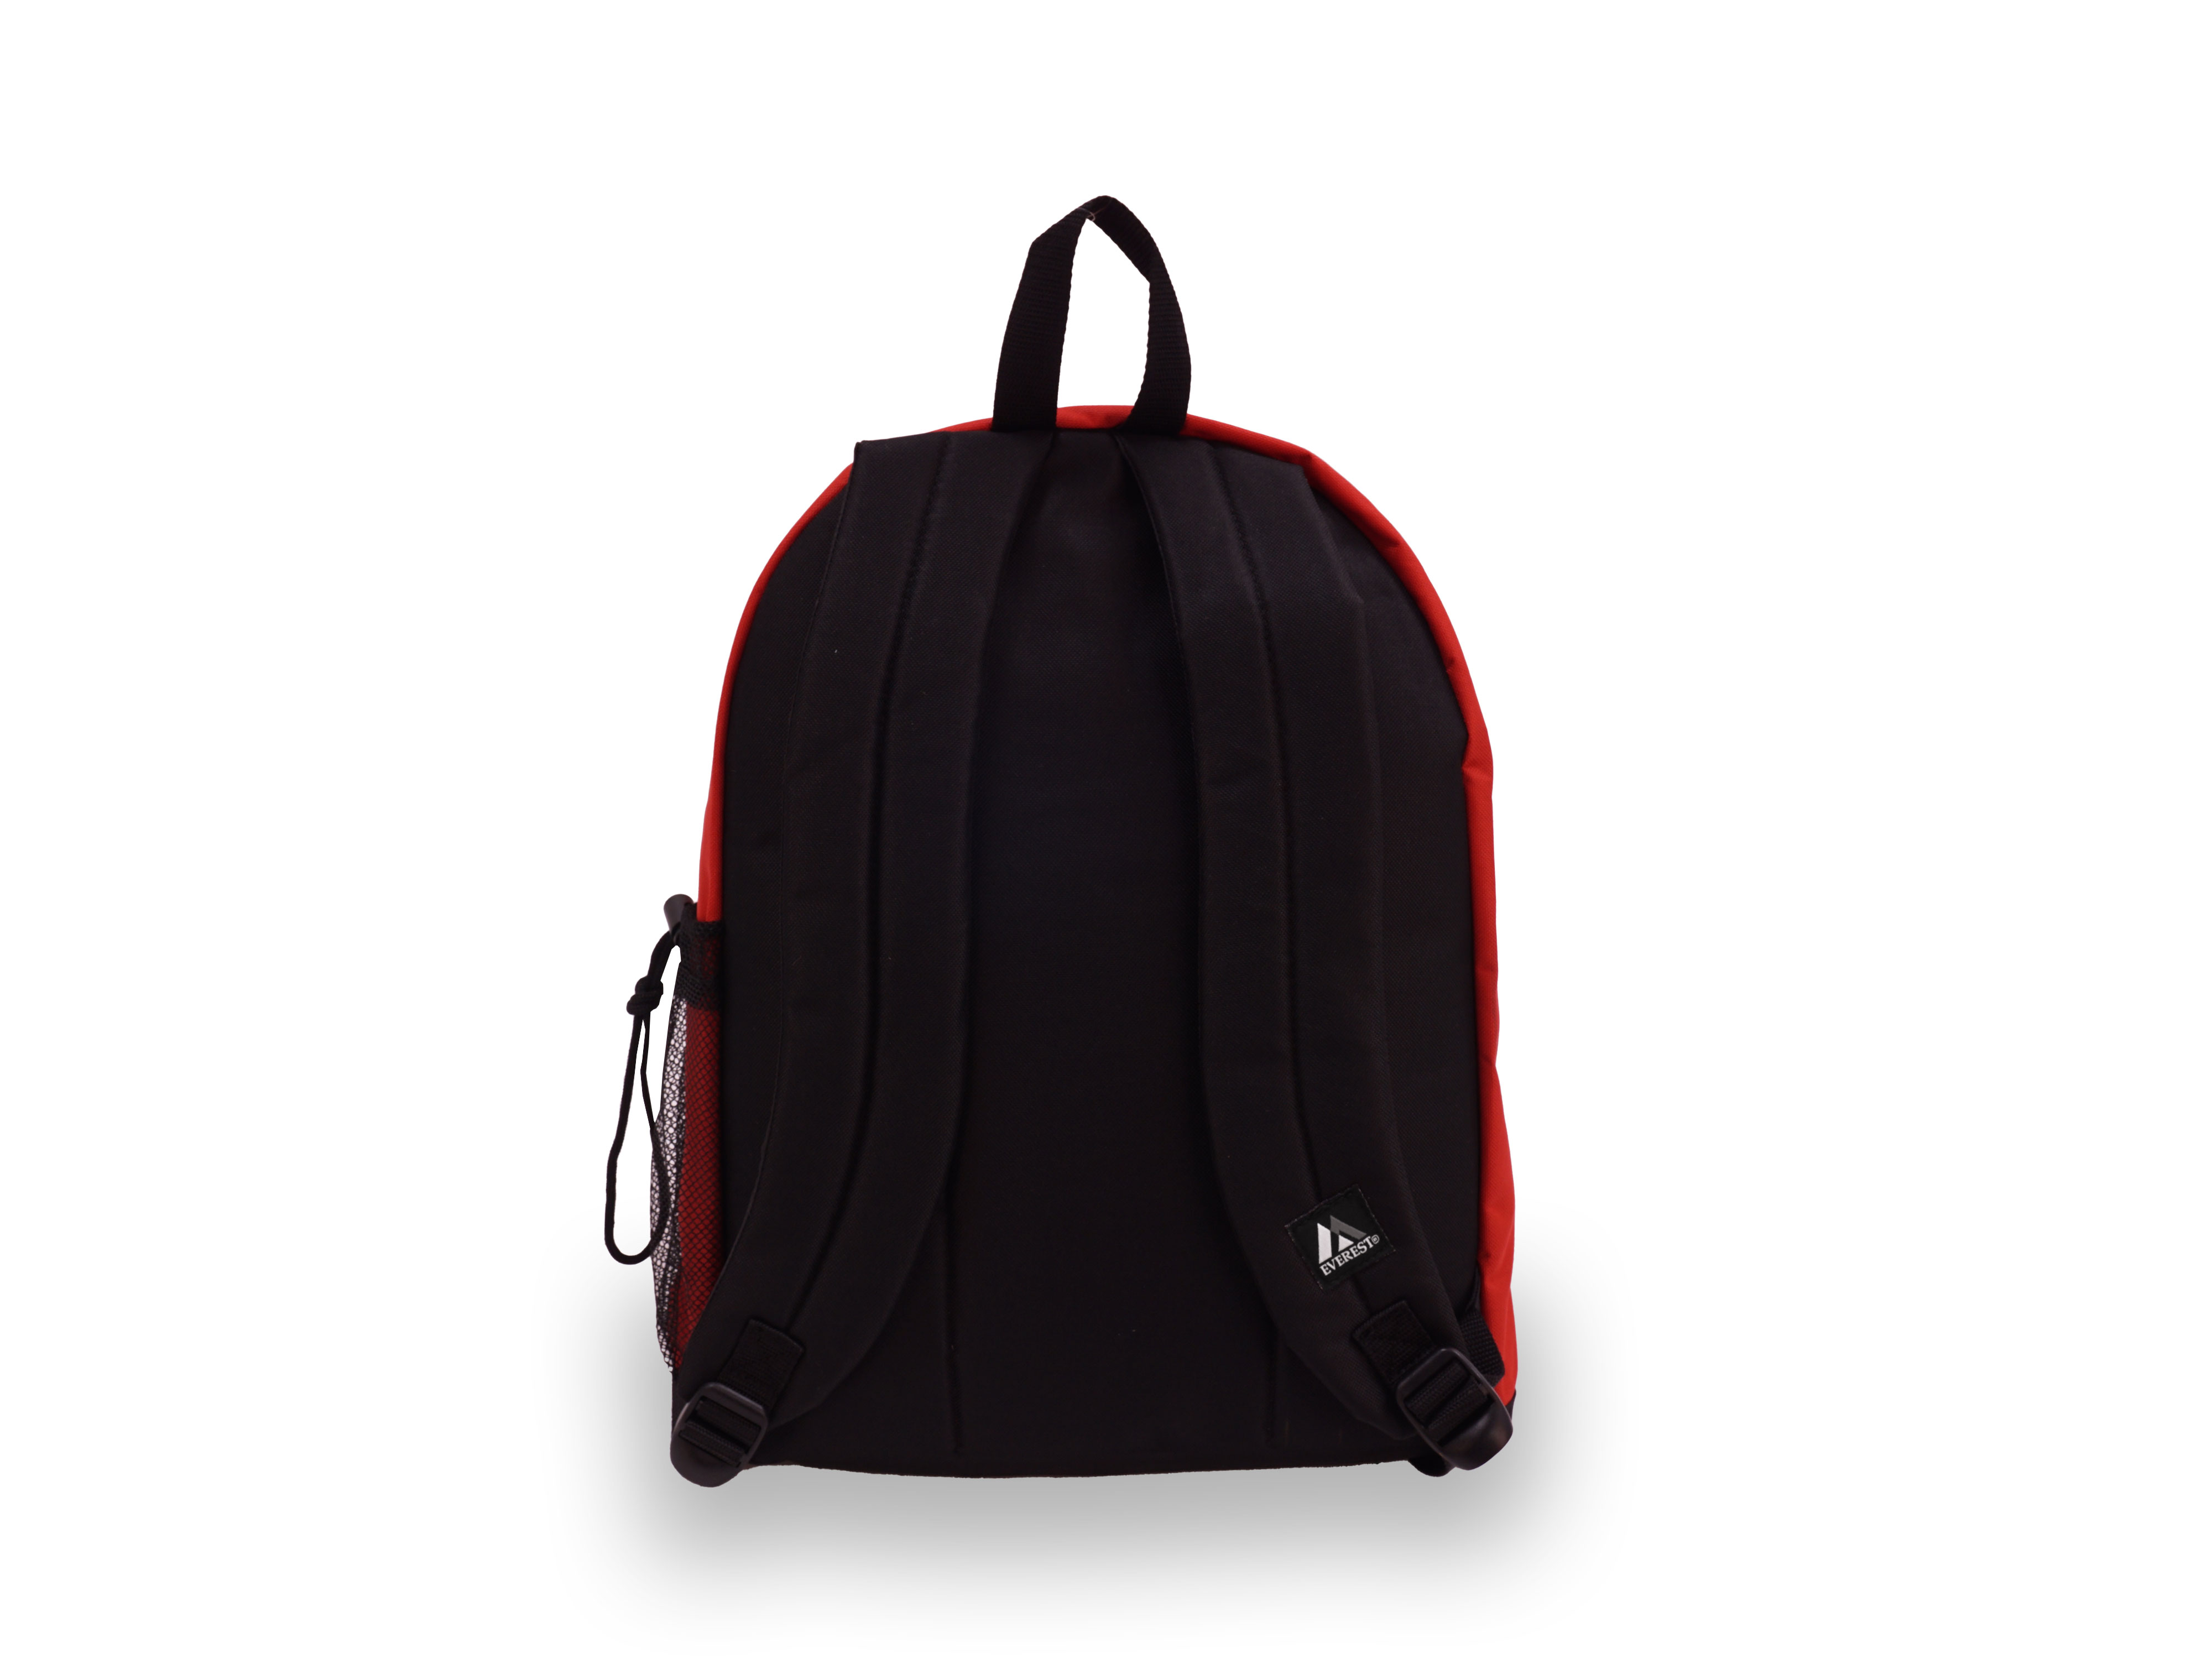 Everest Unisex Standard Backpack, Red - image 3 of 4